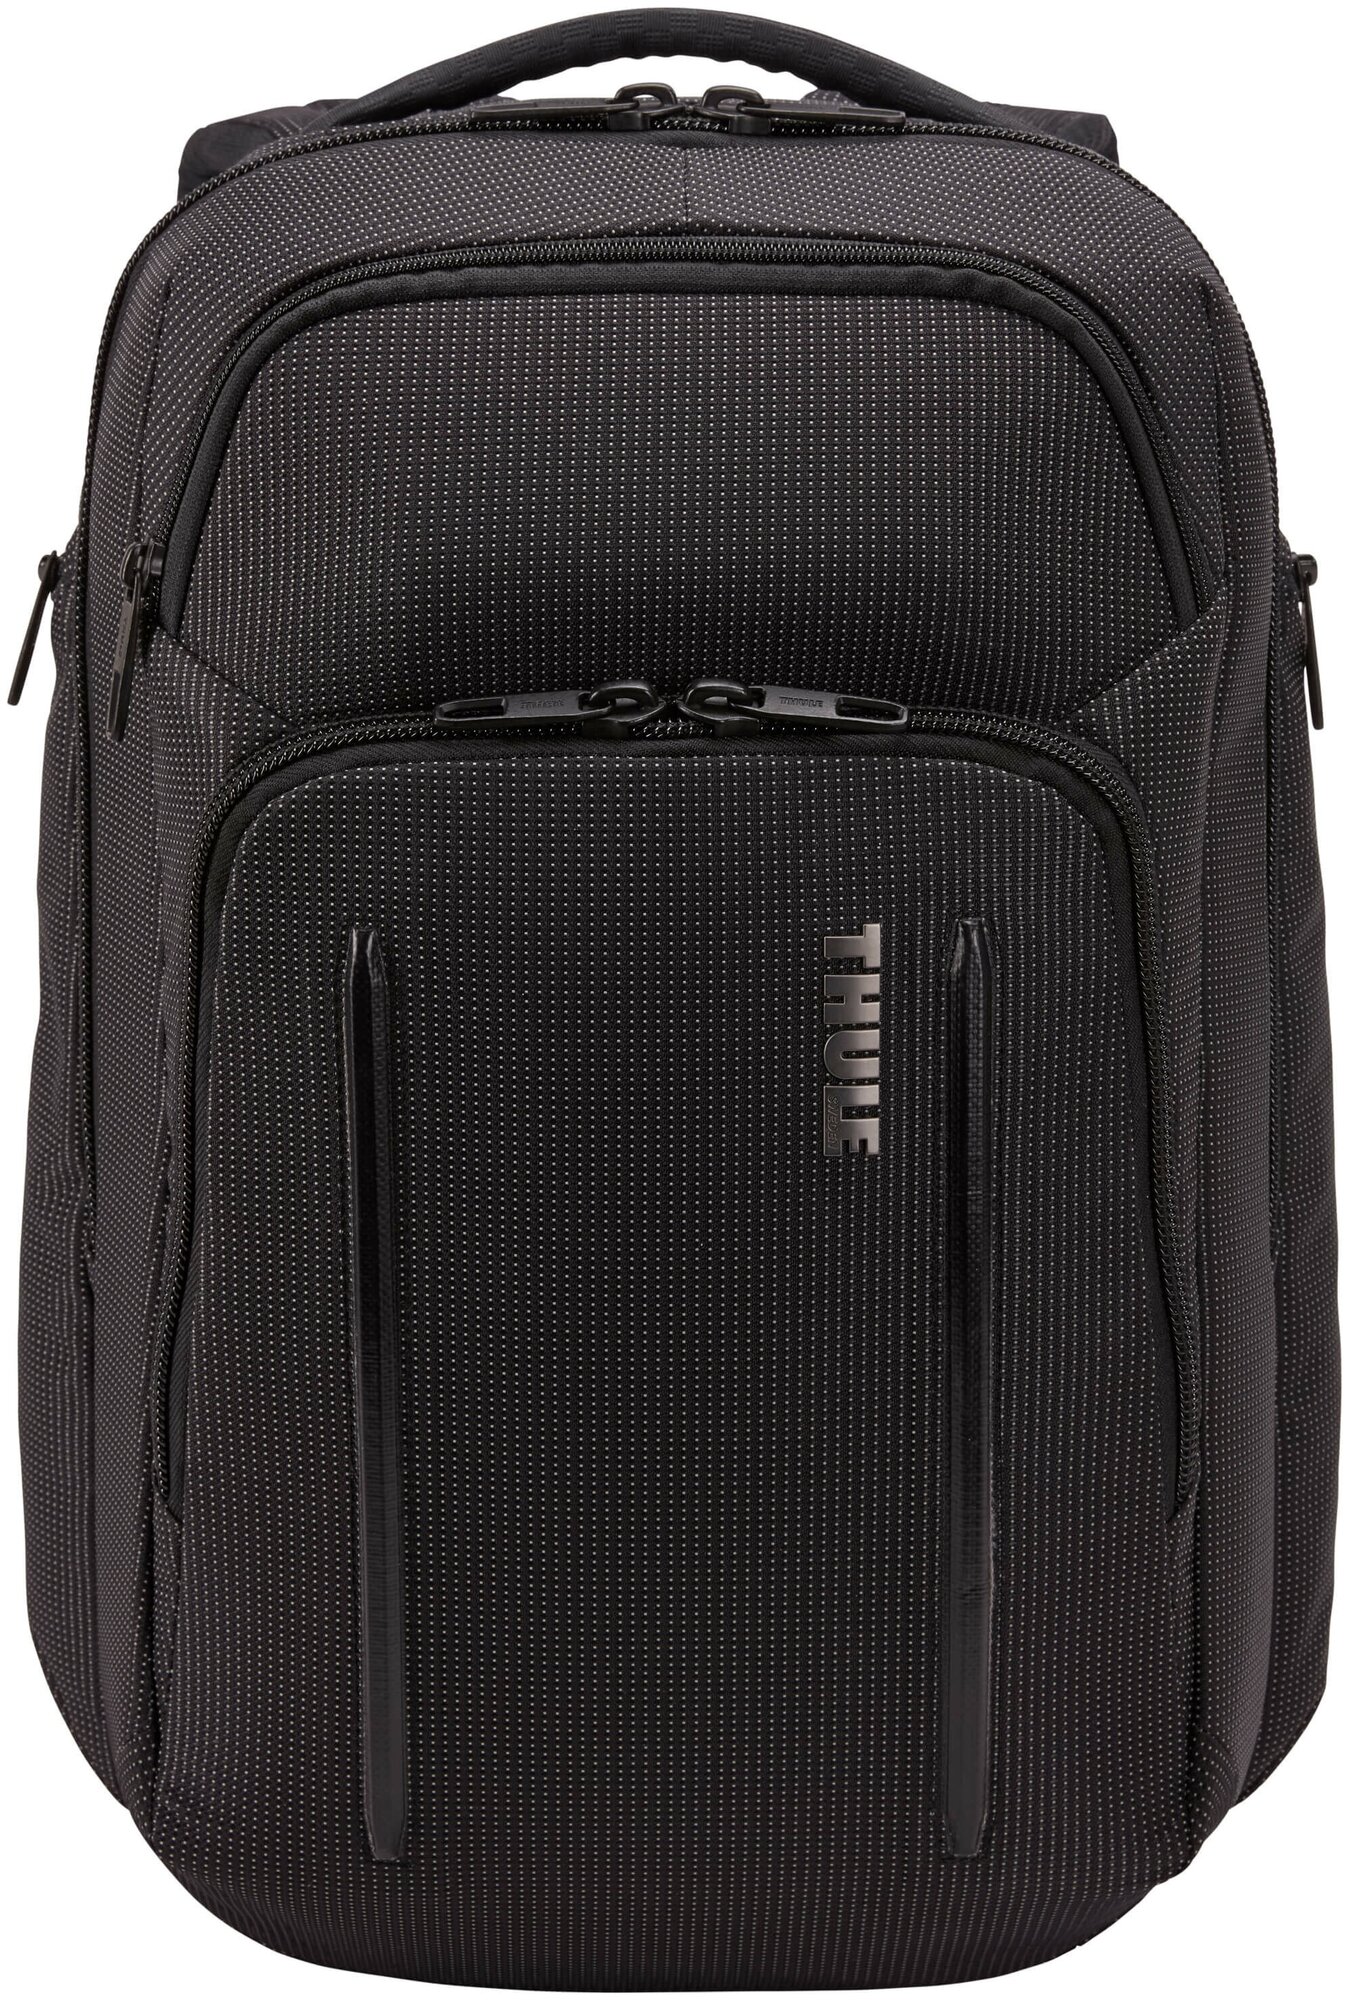 Рюкзак черный, спортивный, городской с отделением для ноутбука и планшета 30л/ Thule Crossover 2, C2BP116BLK (3203835)